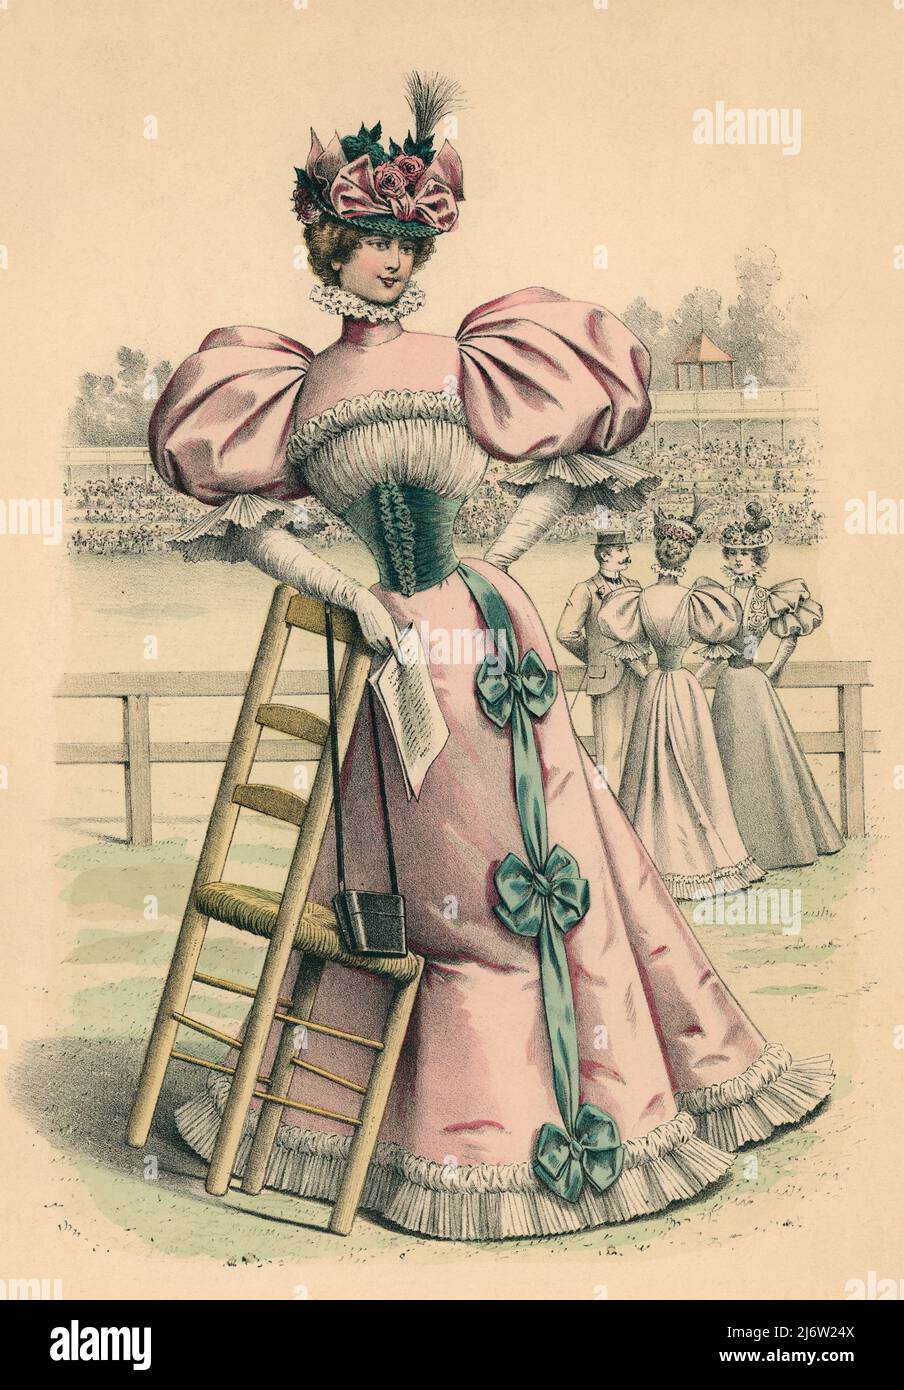 España. Madrid. La moda elegante ilustrada. Una mujer en el hipódromo sujetando una silla de mimbres. Grabado de 1896. Stock Photo